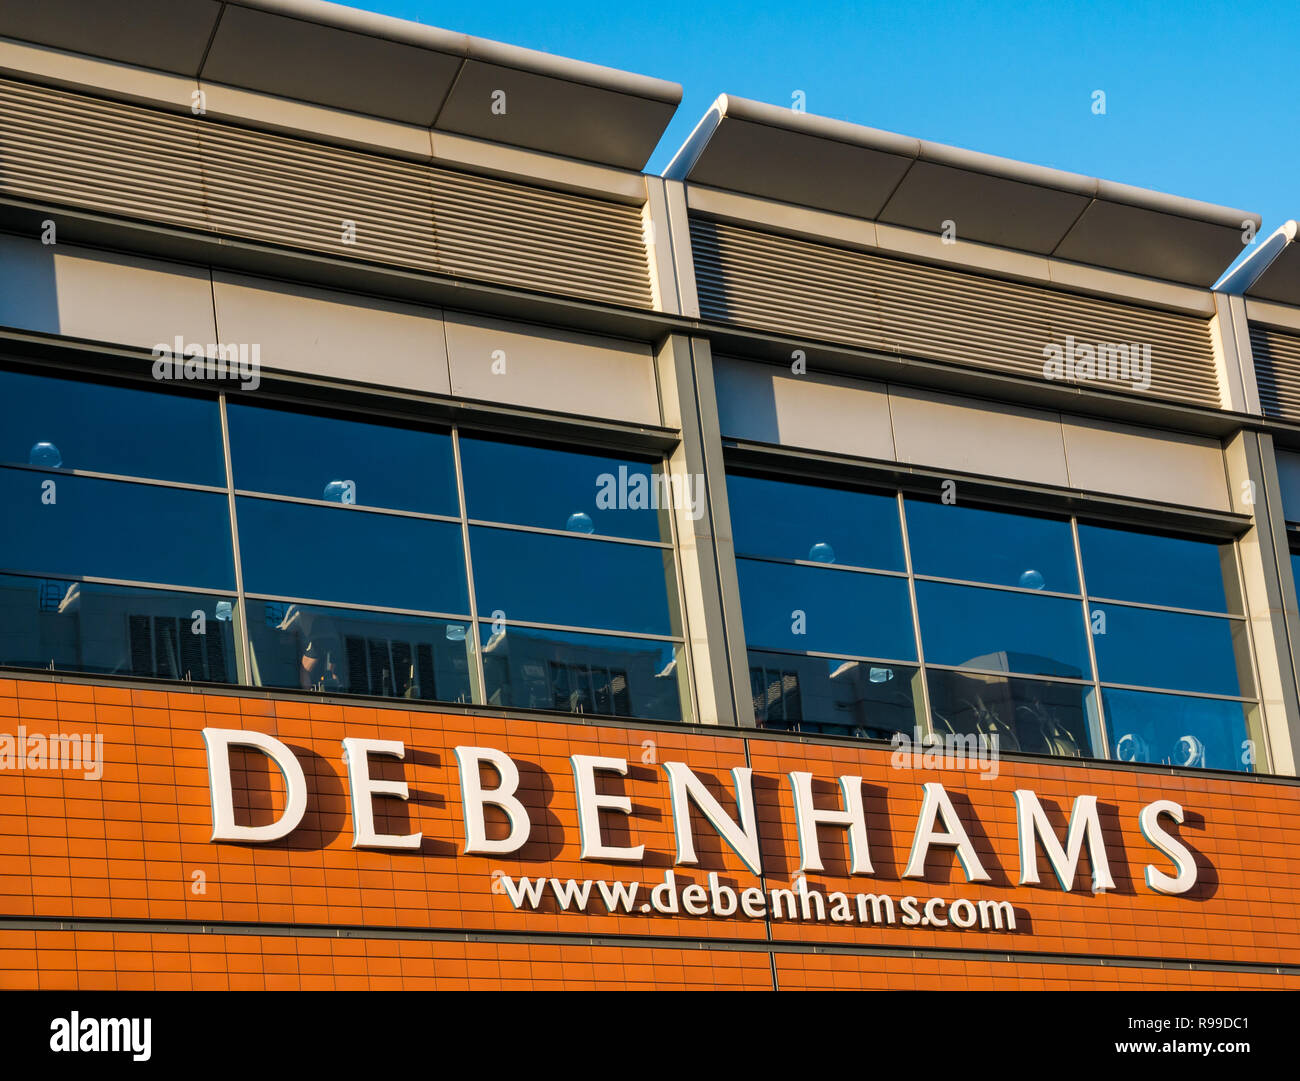 Nome del negozio e sito web di Debenhams sul centro commerciale Ocean Terminal con palestra sopra, Leith, Edinburgh, Scotland, UK Foto Stock